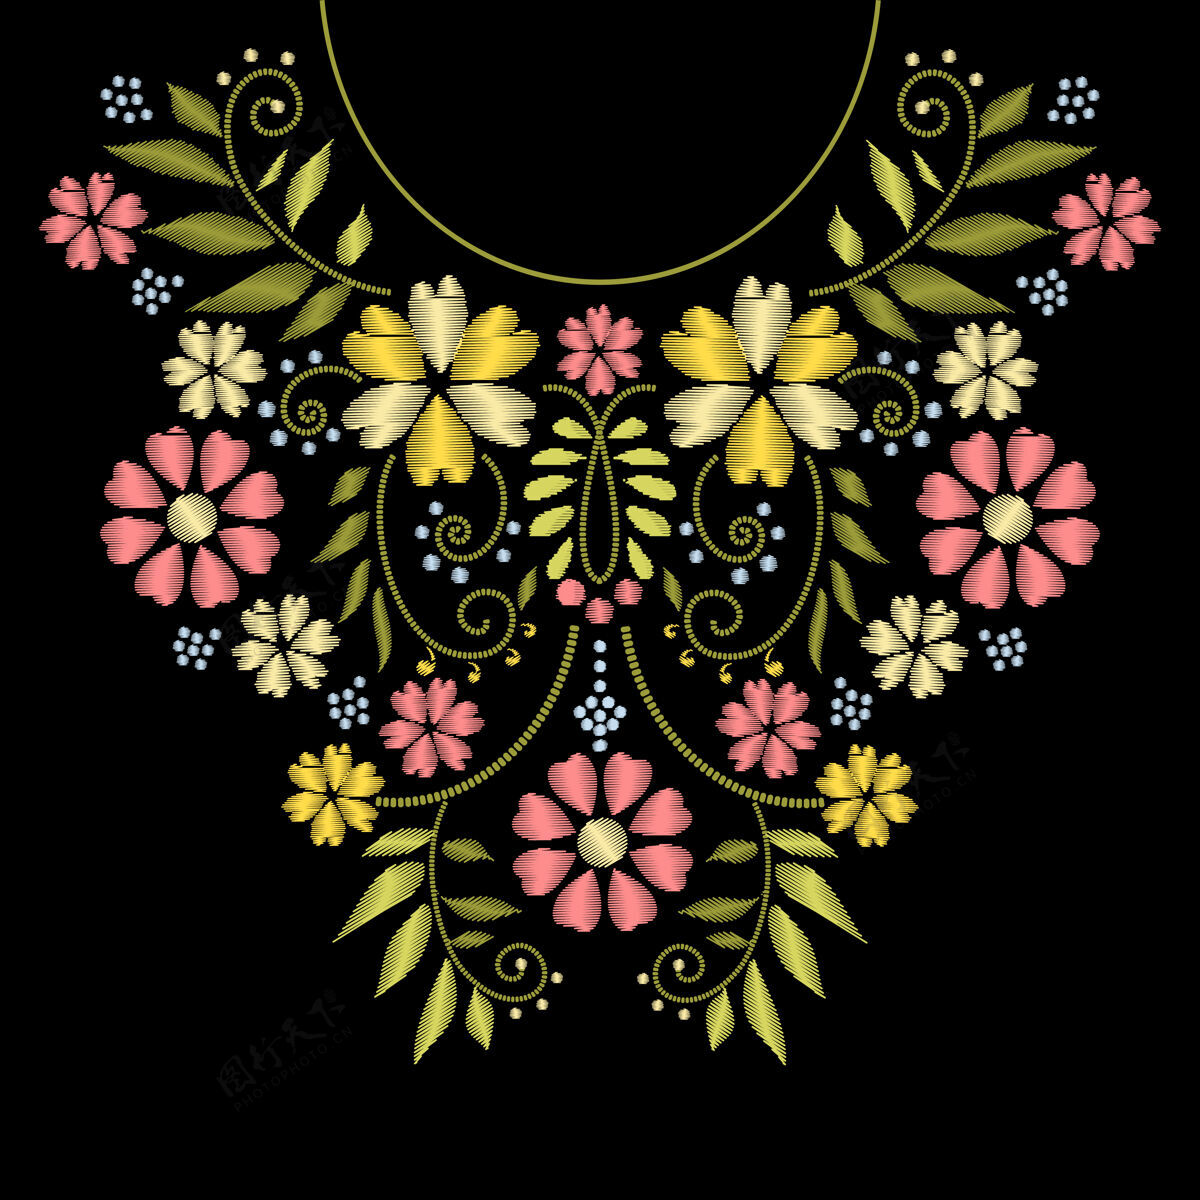 装饰领口线刺绣花卉图案插图线条民族花卉